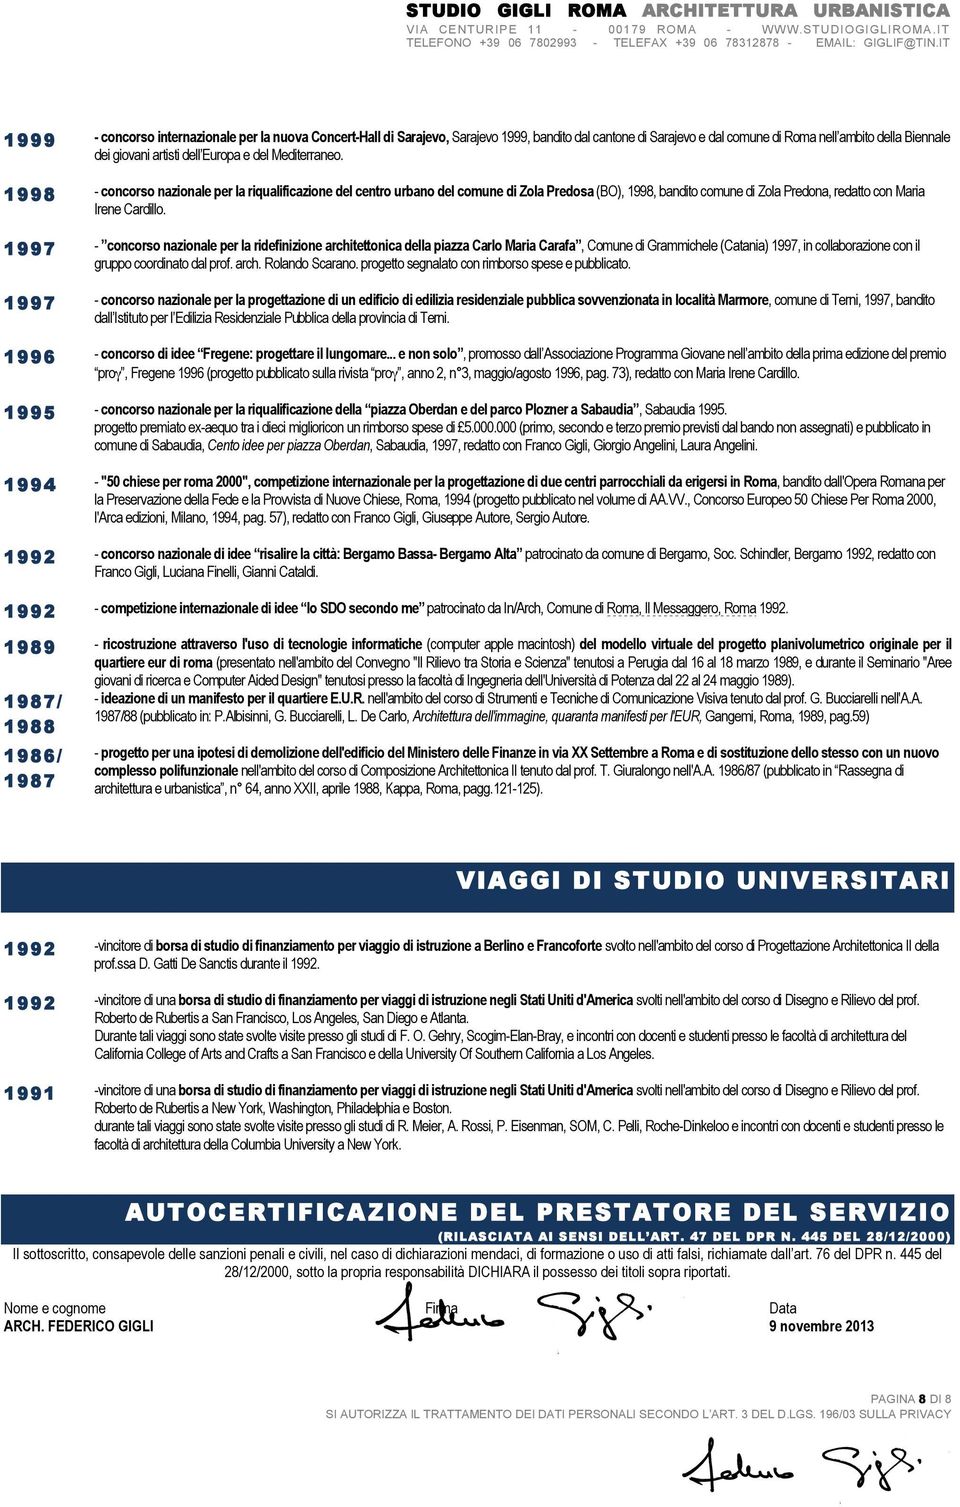 1997 - concorso nzionle per l ridefinizione rchitettonic dell pizz Crlo Mri Crf, Comune di Grmmichele (Ctni) 1997, in collborzione con il gruppo coordinto dl prof. rch. Rolndo Scrno.